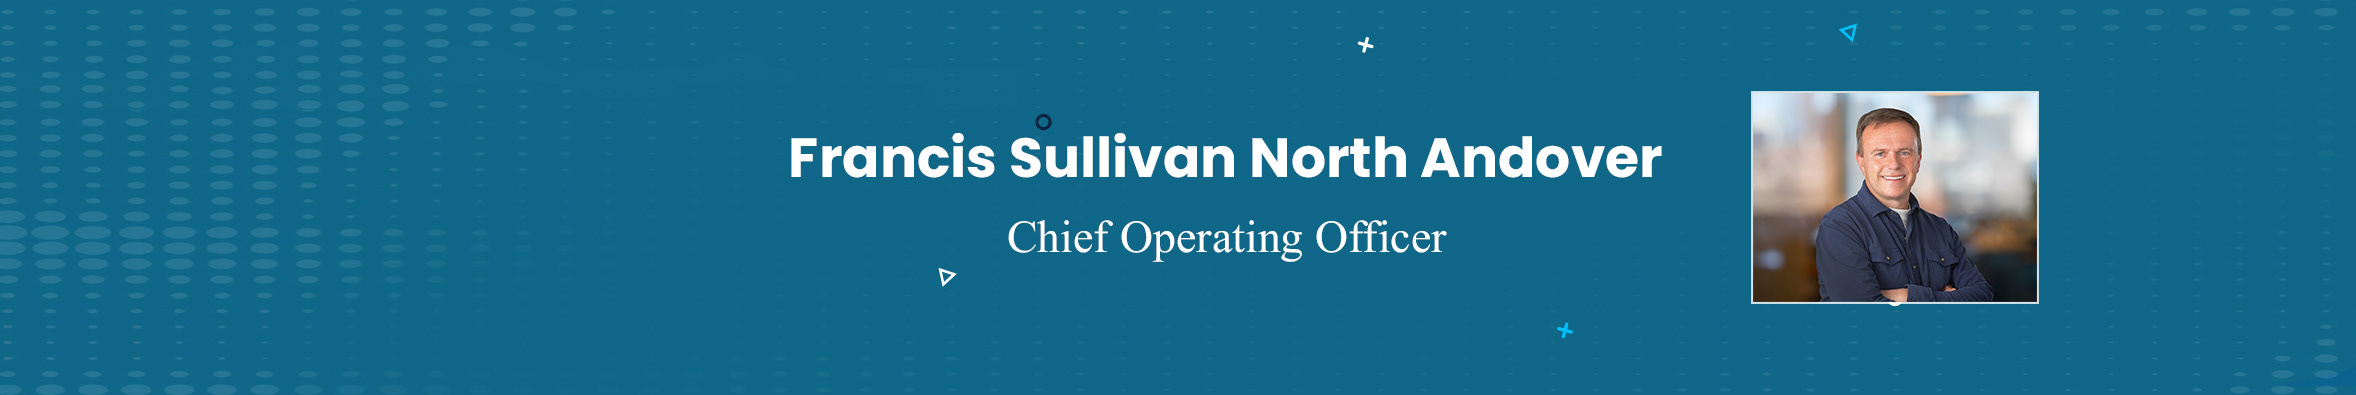 Francis Sullivan North Andover's profile banner